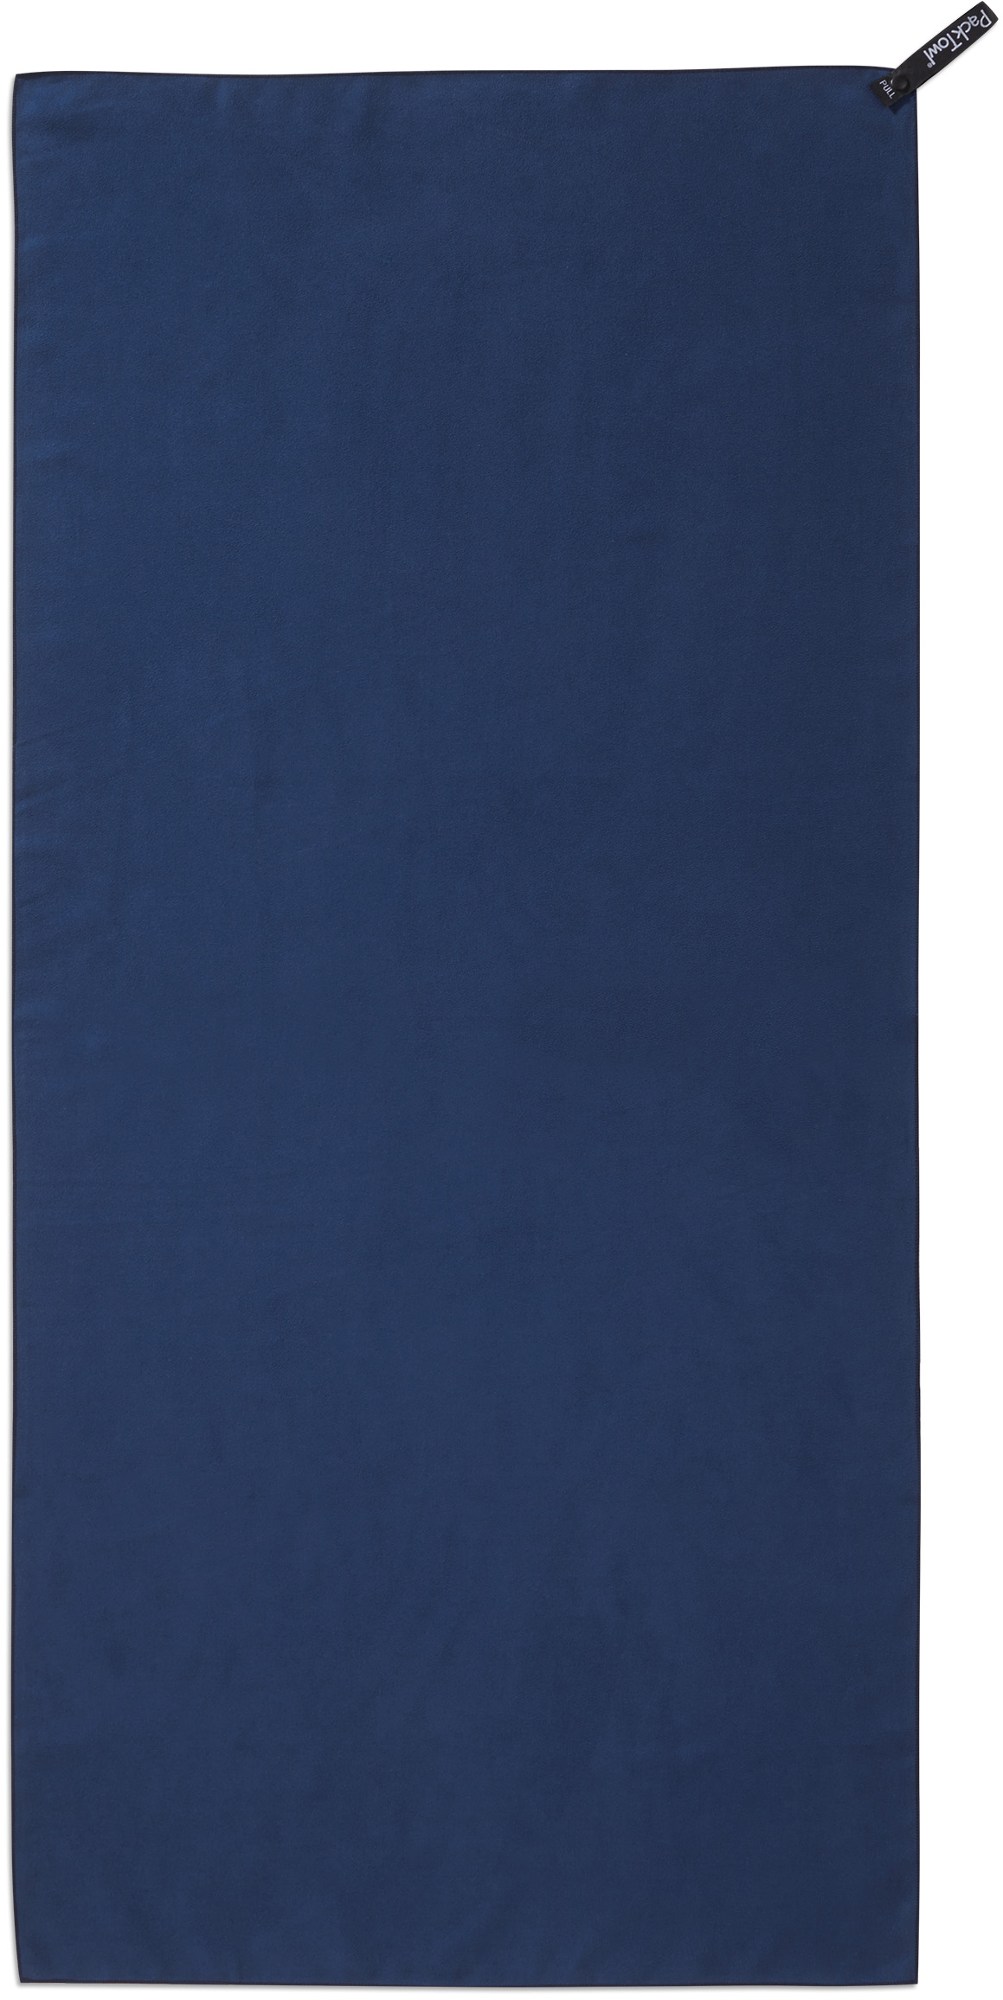 Личное полотенце PackTowl, синий